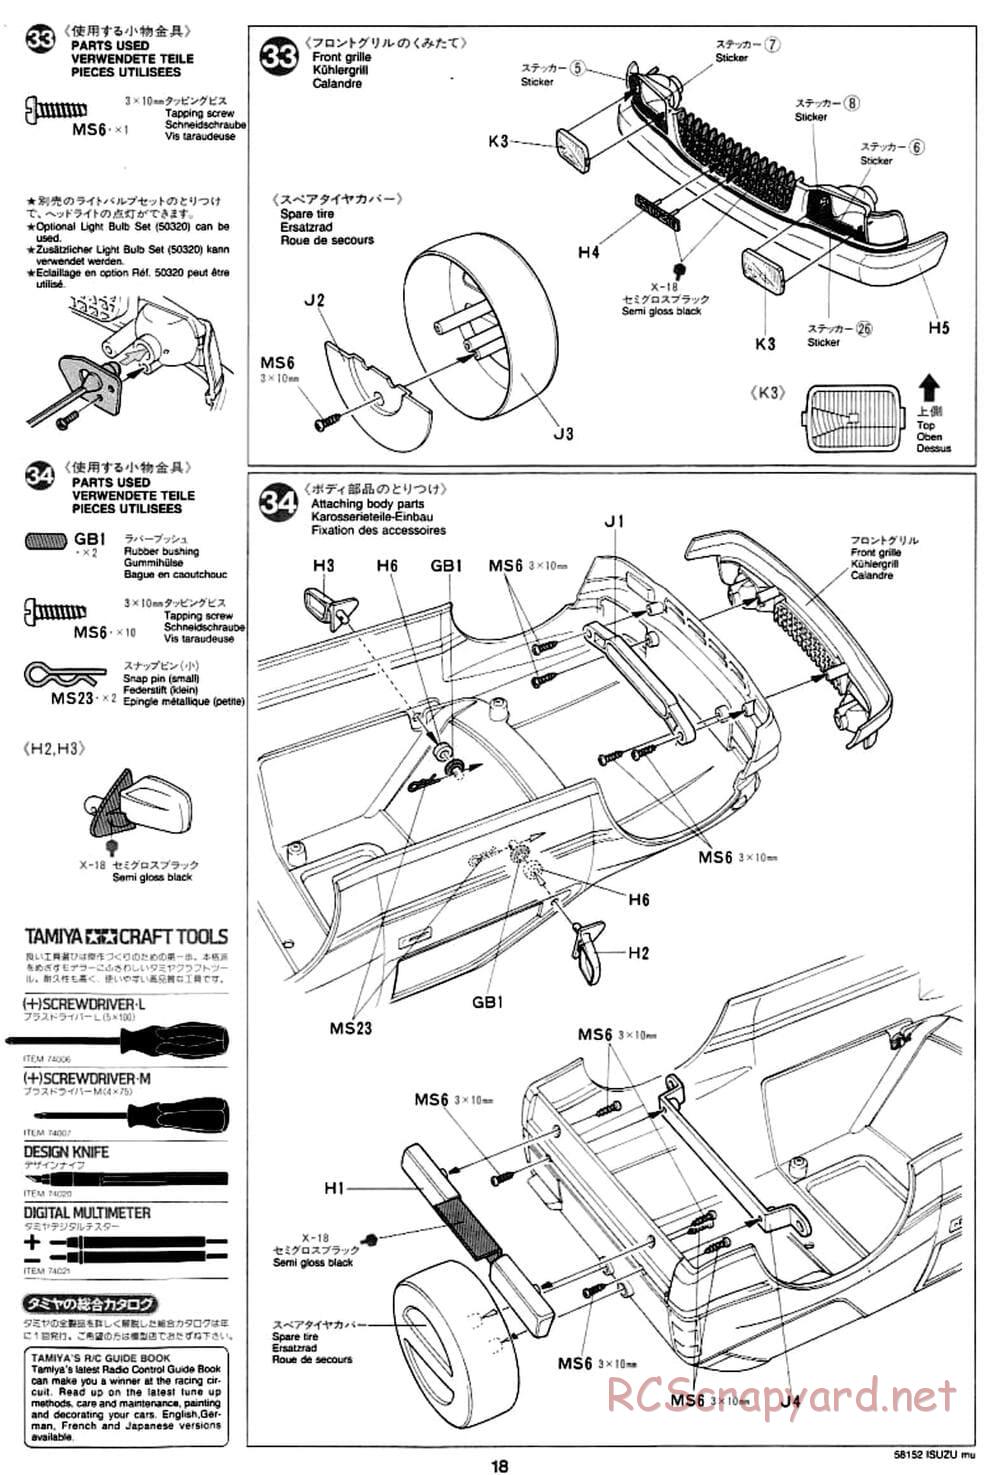 Tamiya - Isuzu Mu - CC-01 Chassis - Manual - Page 18